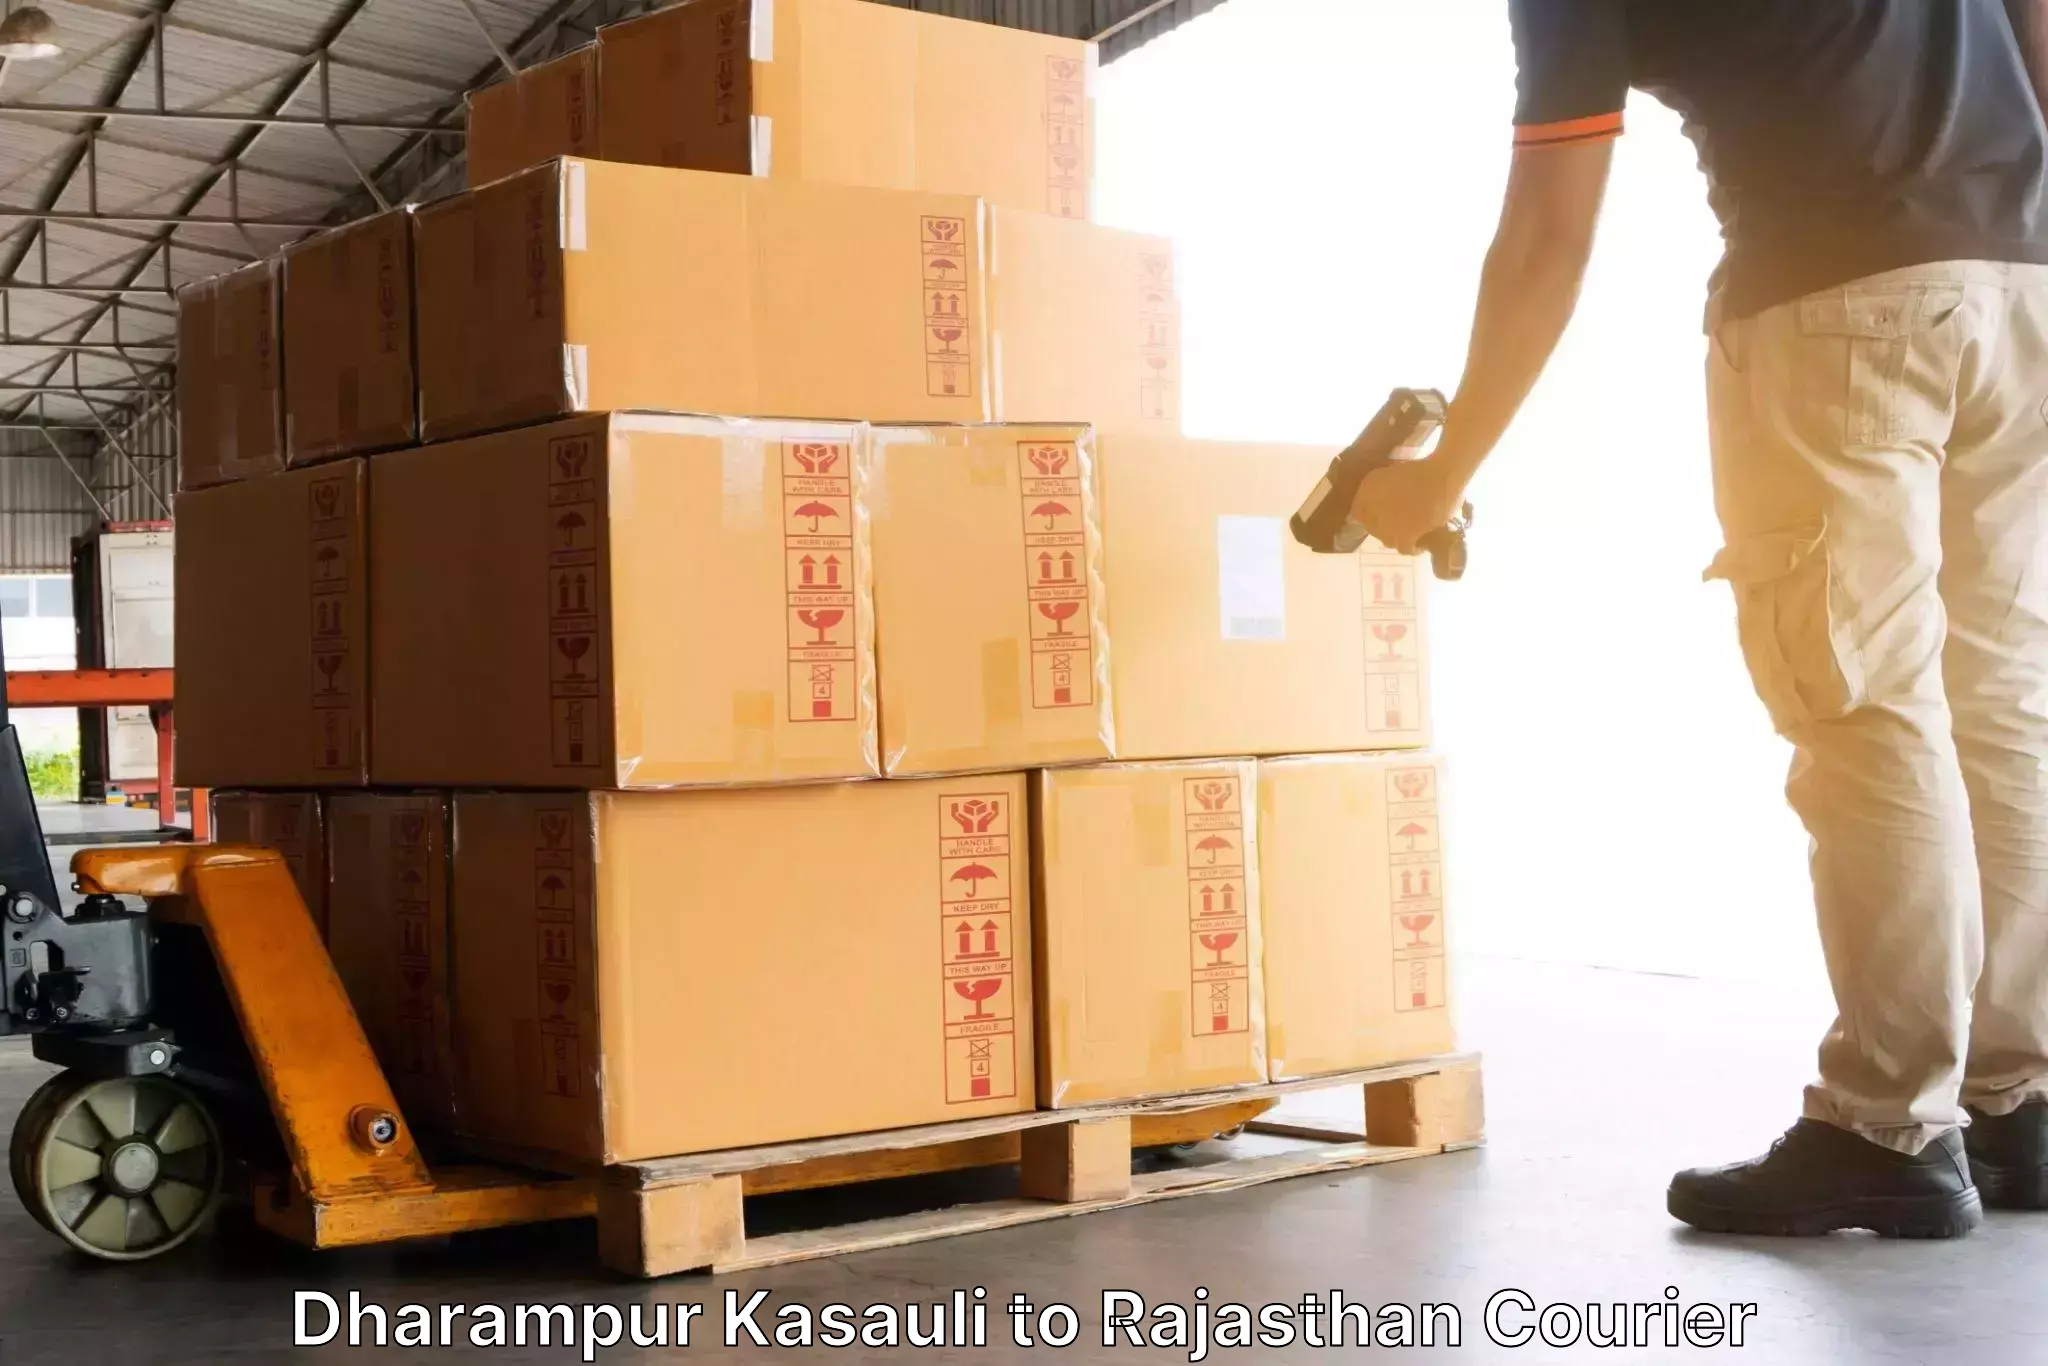 Next-generation courier services Dharampur Kasauli to Jhunjhunu